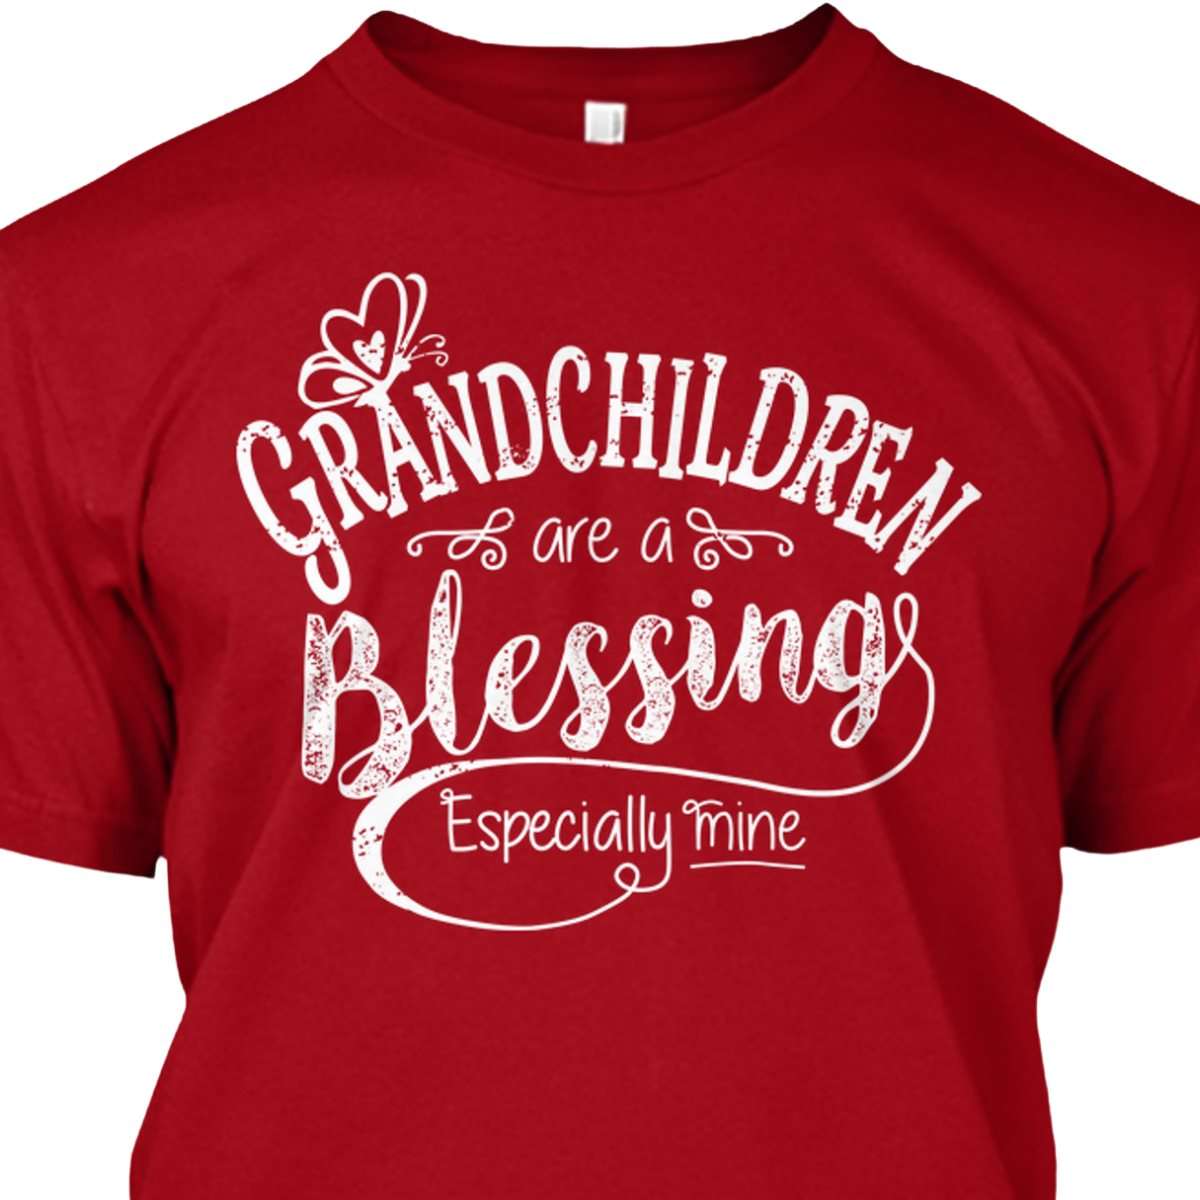 Grandchildren are a blessing especially mine - Grandparent and grandchildren